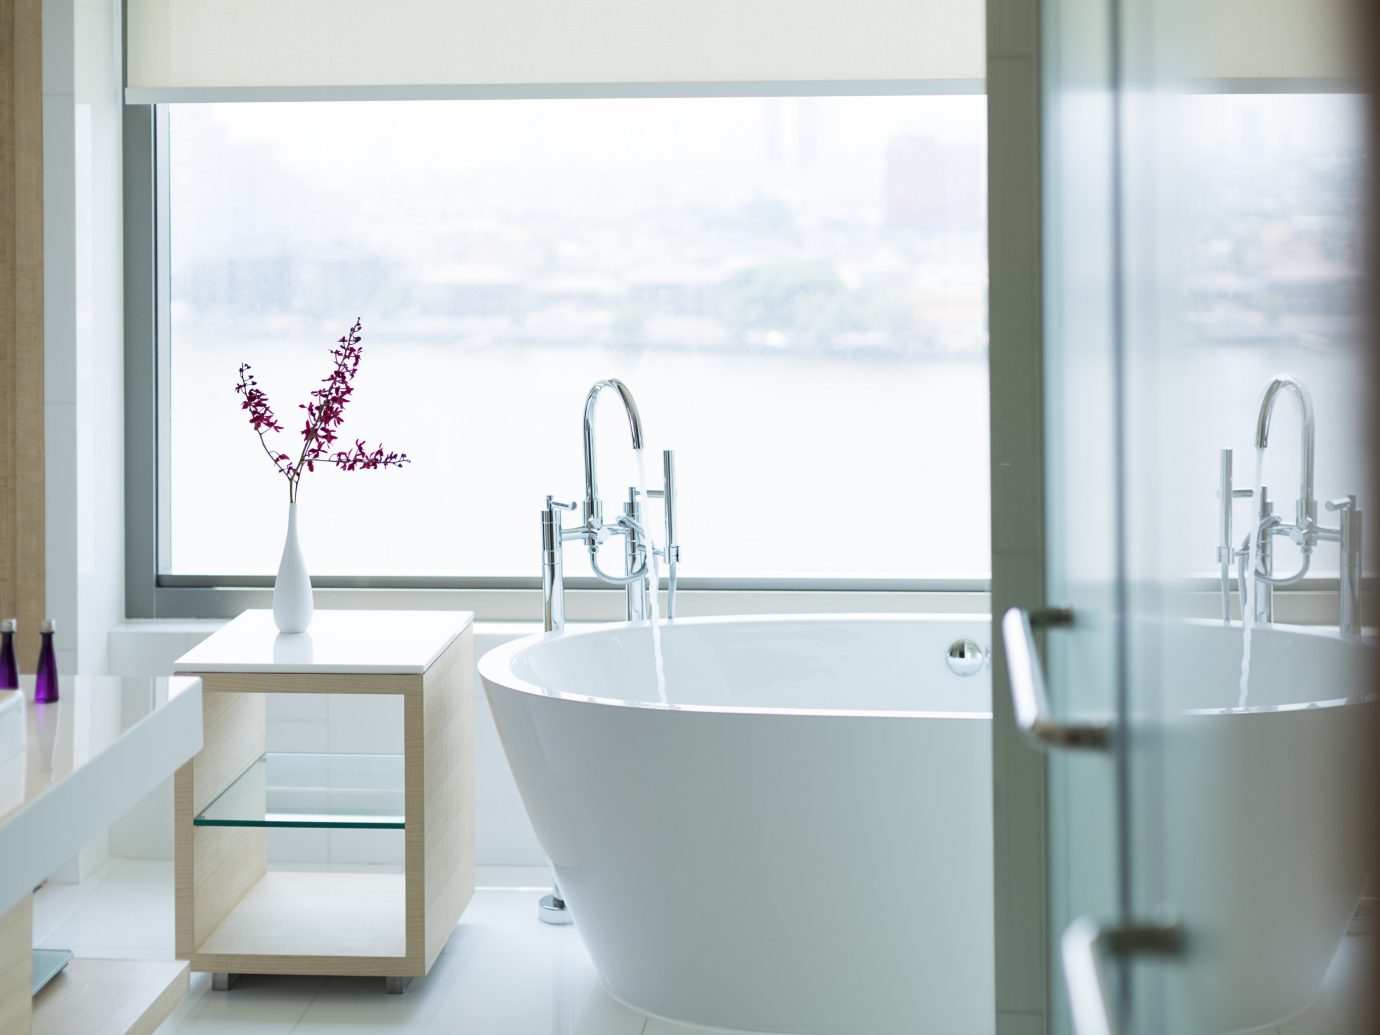 Hotels Romance window indoor wall bathroom room bathtub plumbing fixture floor interior design home bidet Design sink